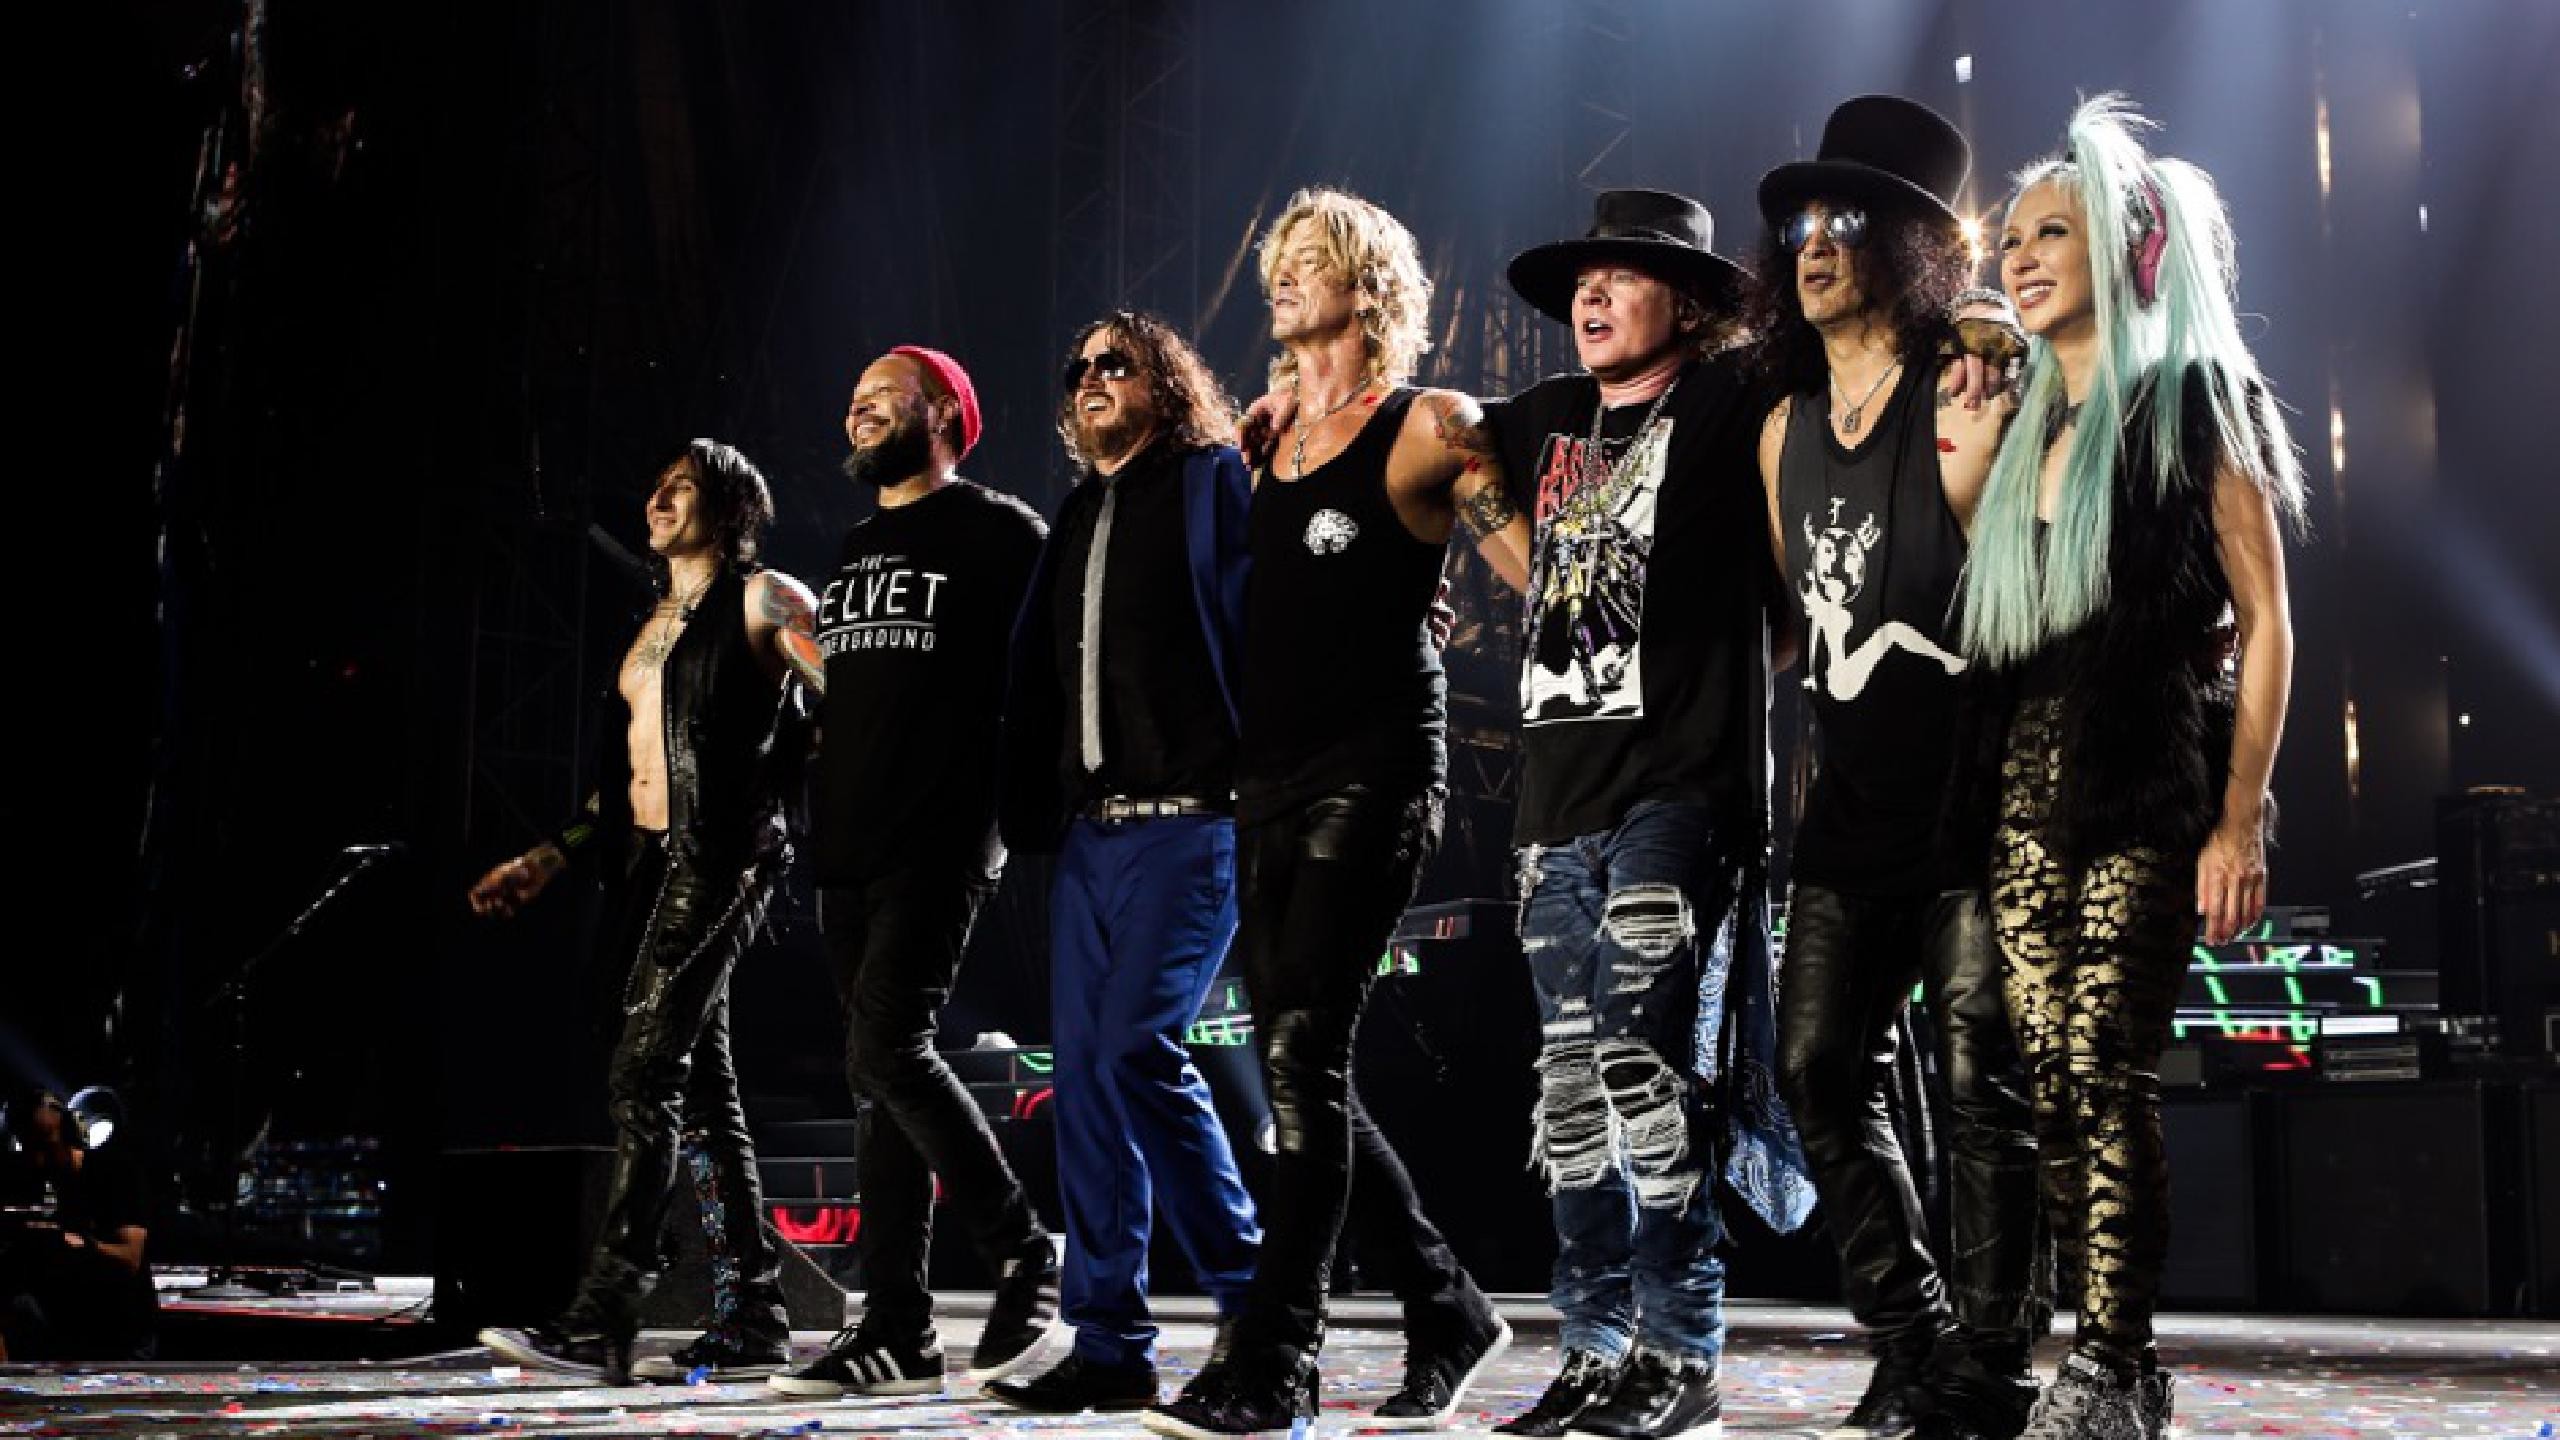 2560x1440 Guns N' Roses Tickets fÃ¼r 2017 2018 Tour. Information Ã¼ber Konzerte, Tour  und Karten von Guns N' Roses in 2017 2018 | Wegow